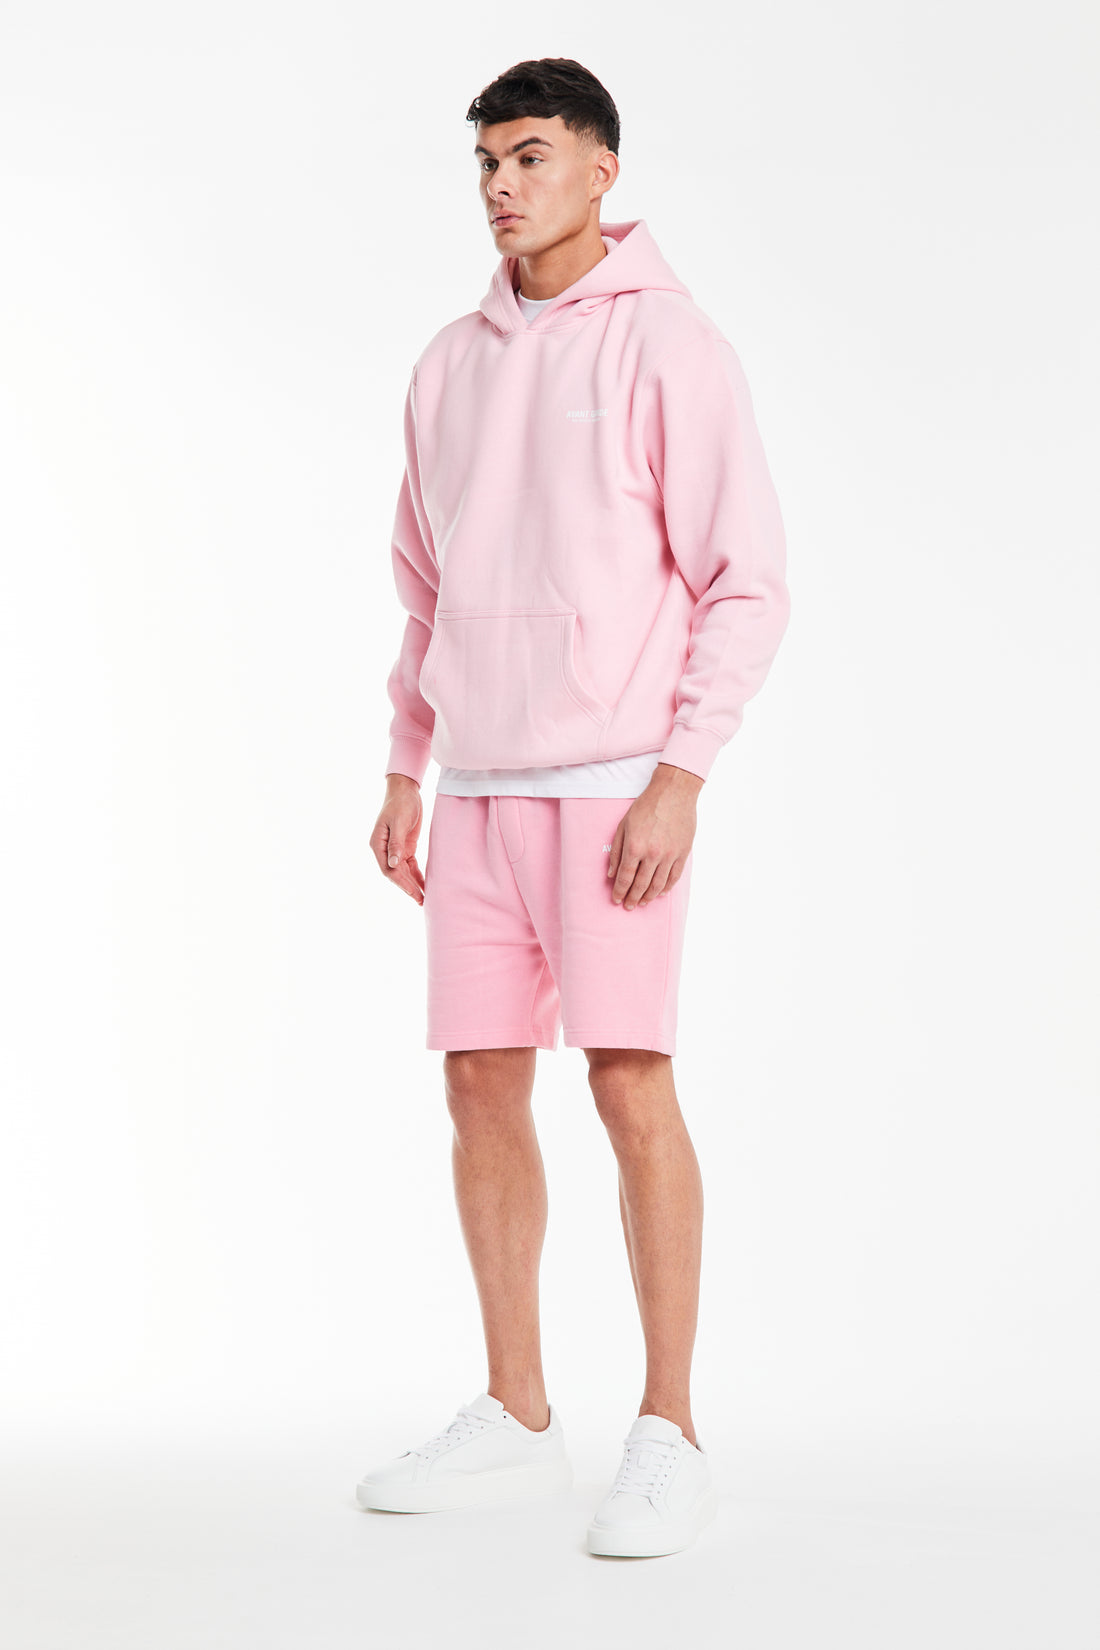 mens hoodies sale in bubblegum pink